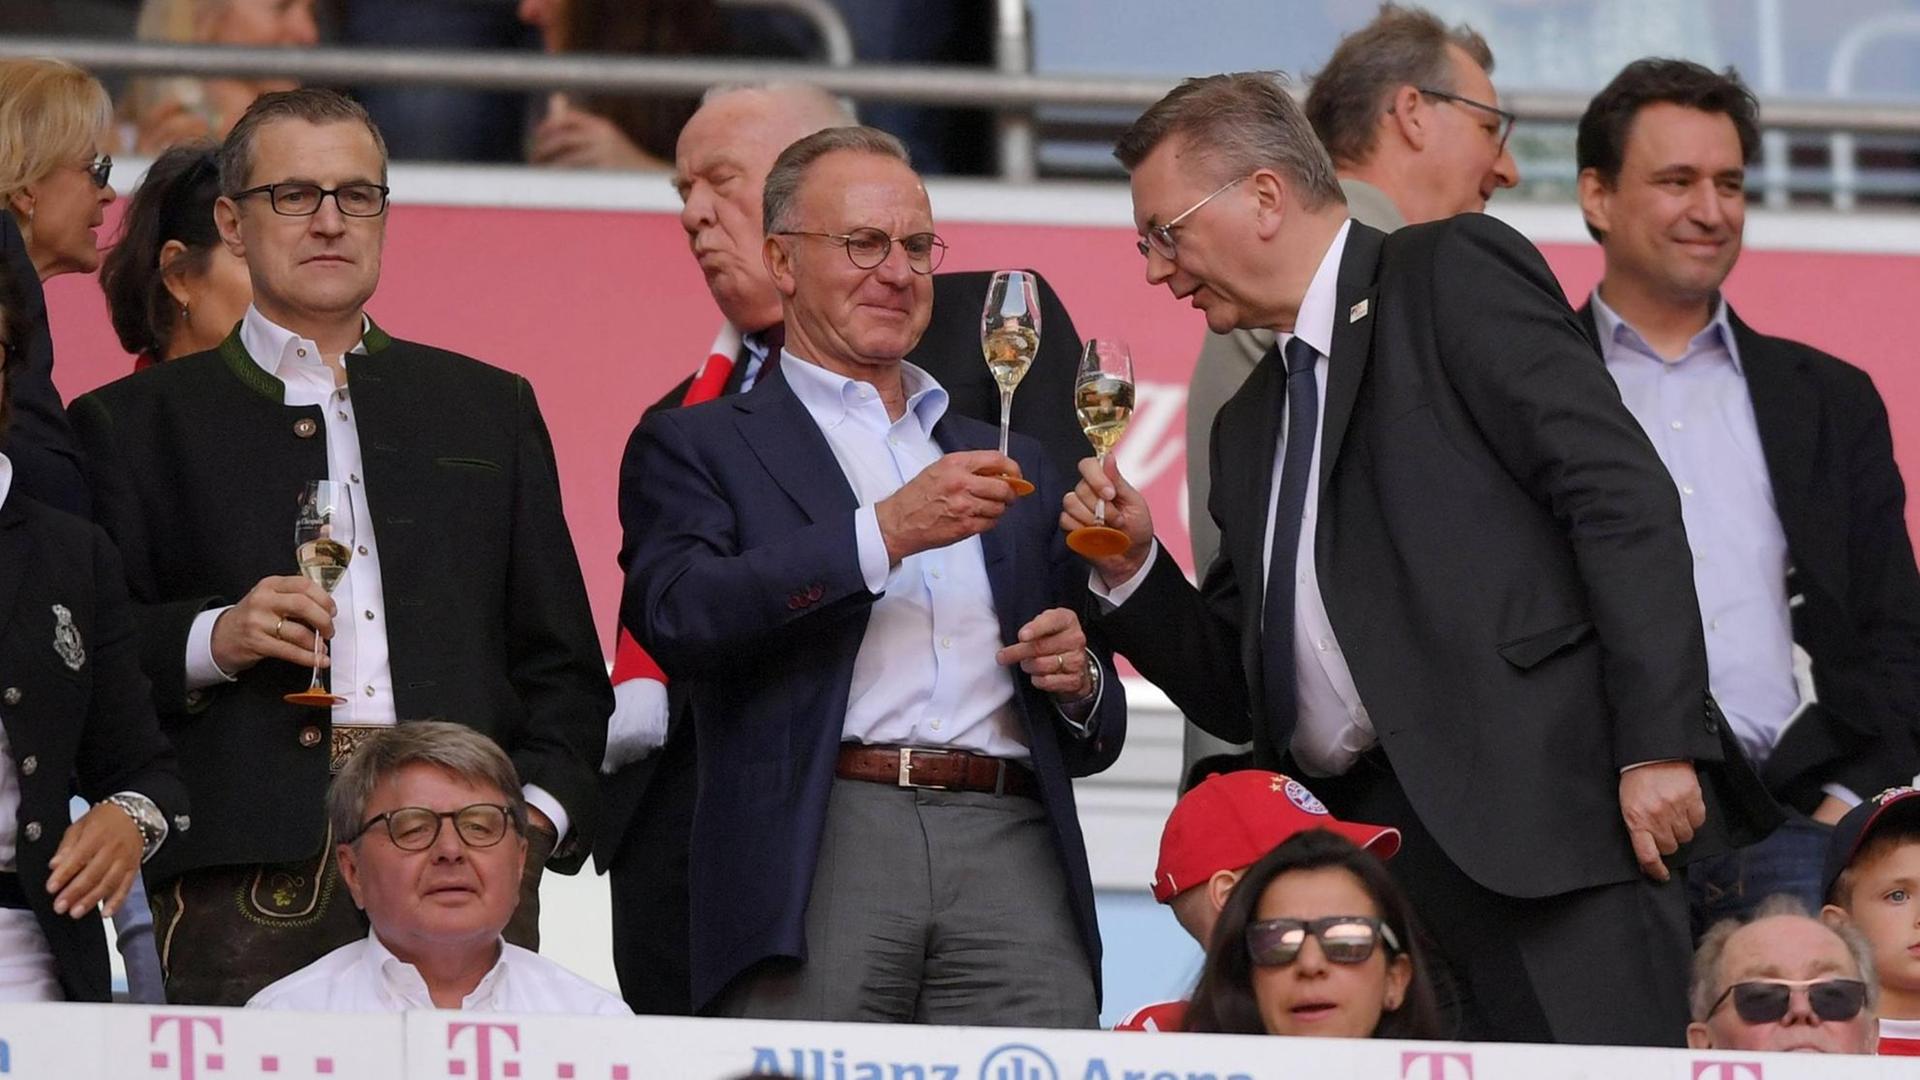 Vorstandsvorsitzender Karl-Heinz Rummenigge (FC Bayern München) und DFB-Präsident Reinhard Grindel trinken Sekt auf der Ehrentribüne.